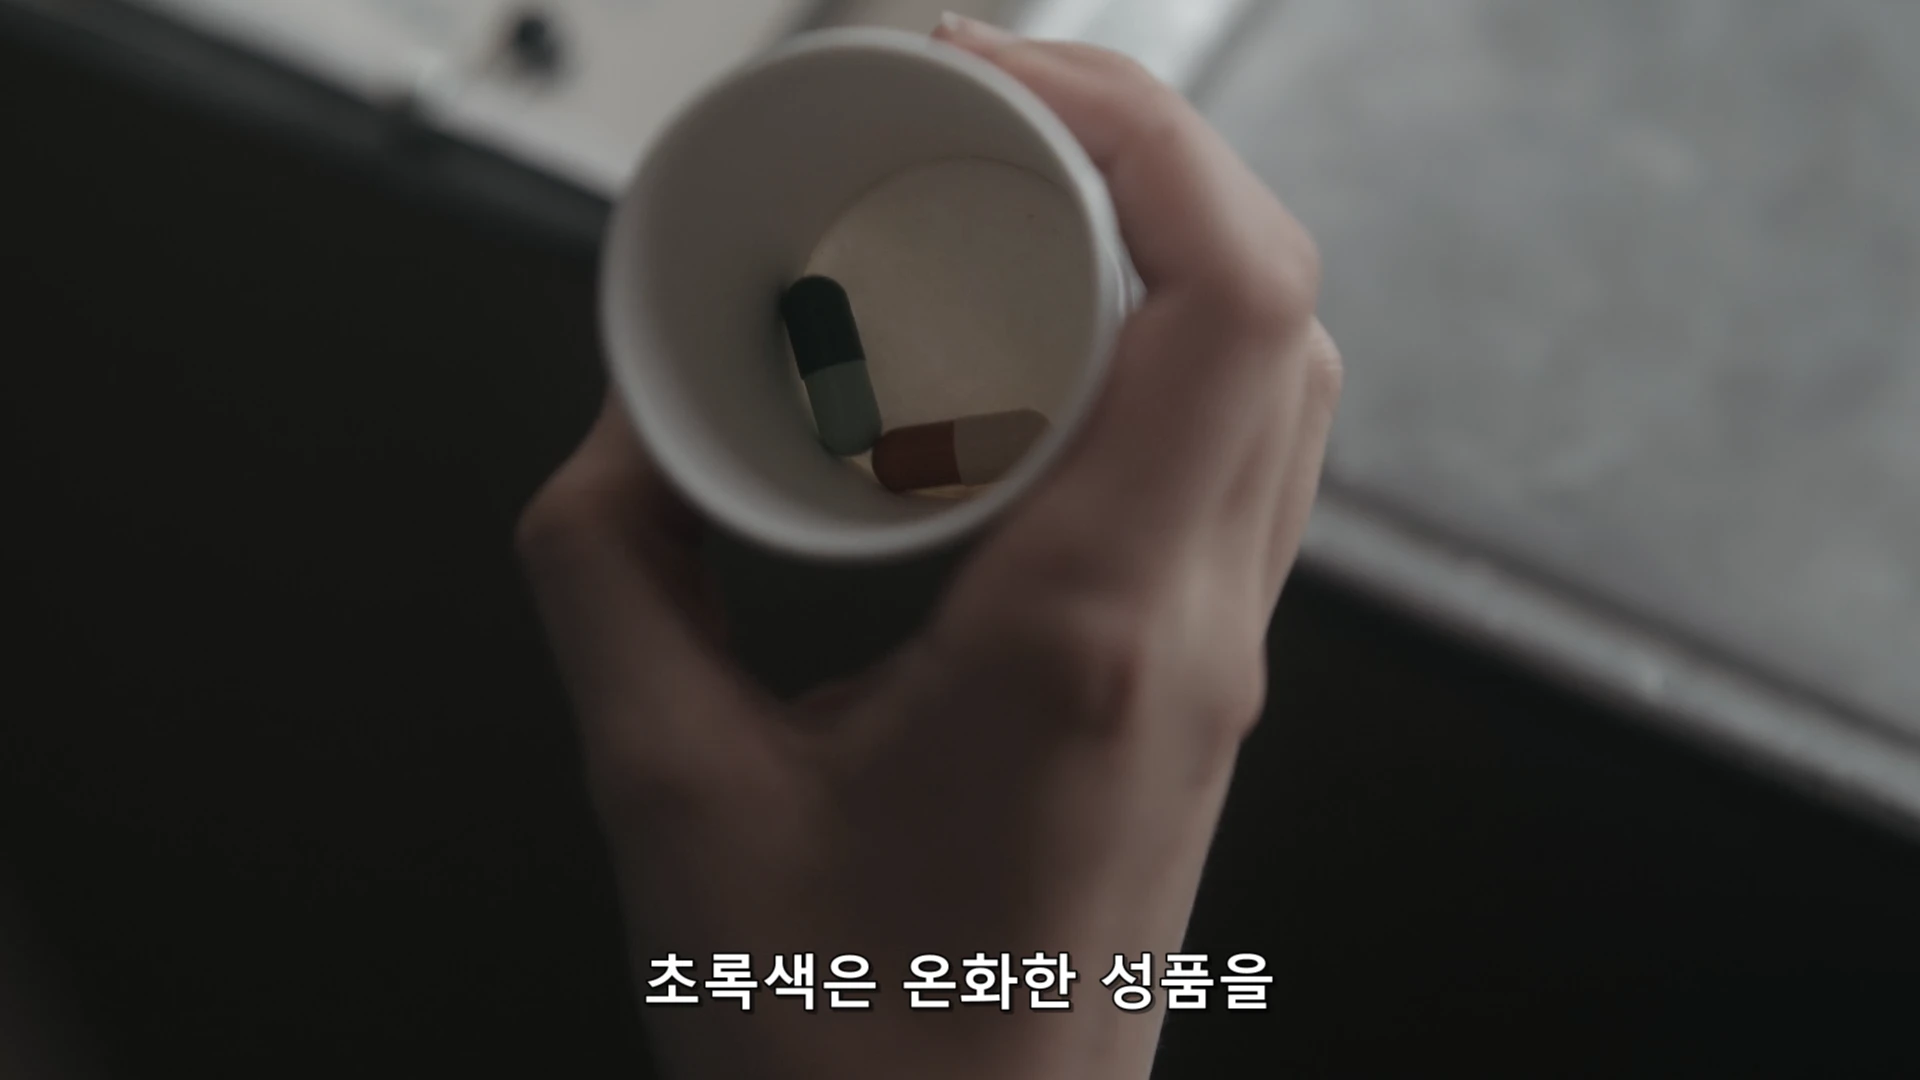 안야 테일러조이 넷플릭스 드라마 퀸스갬빗 1화 리뷰 06